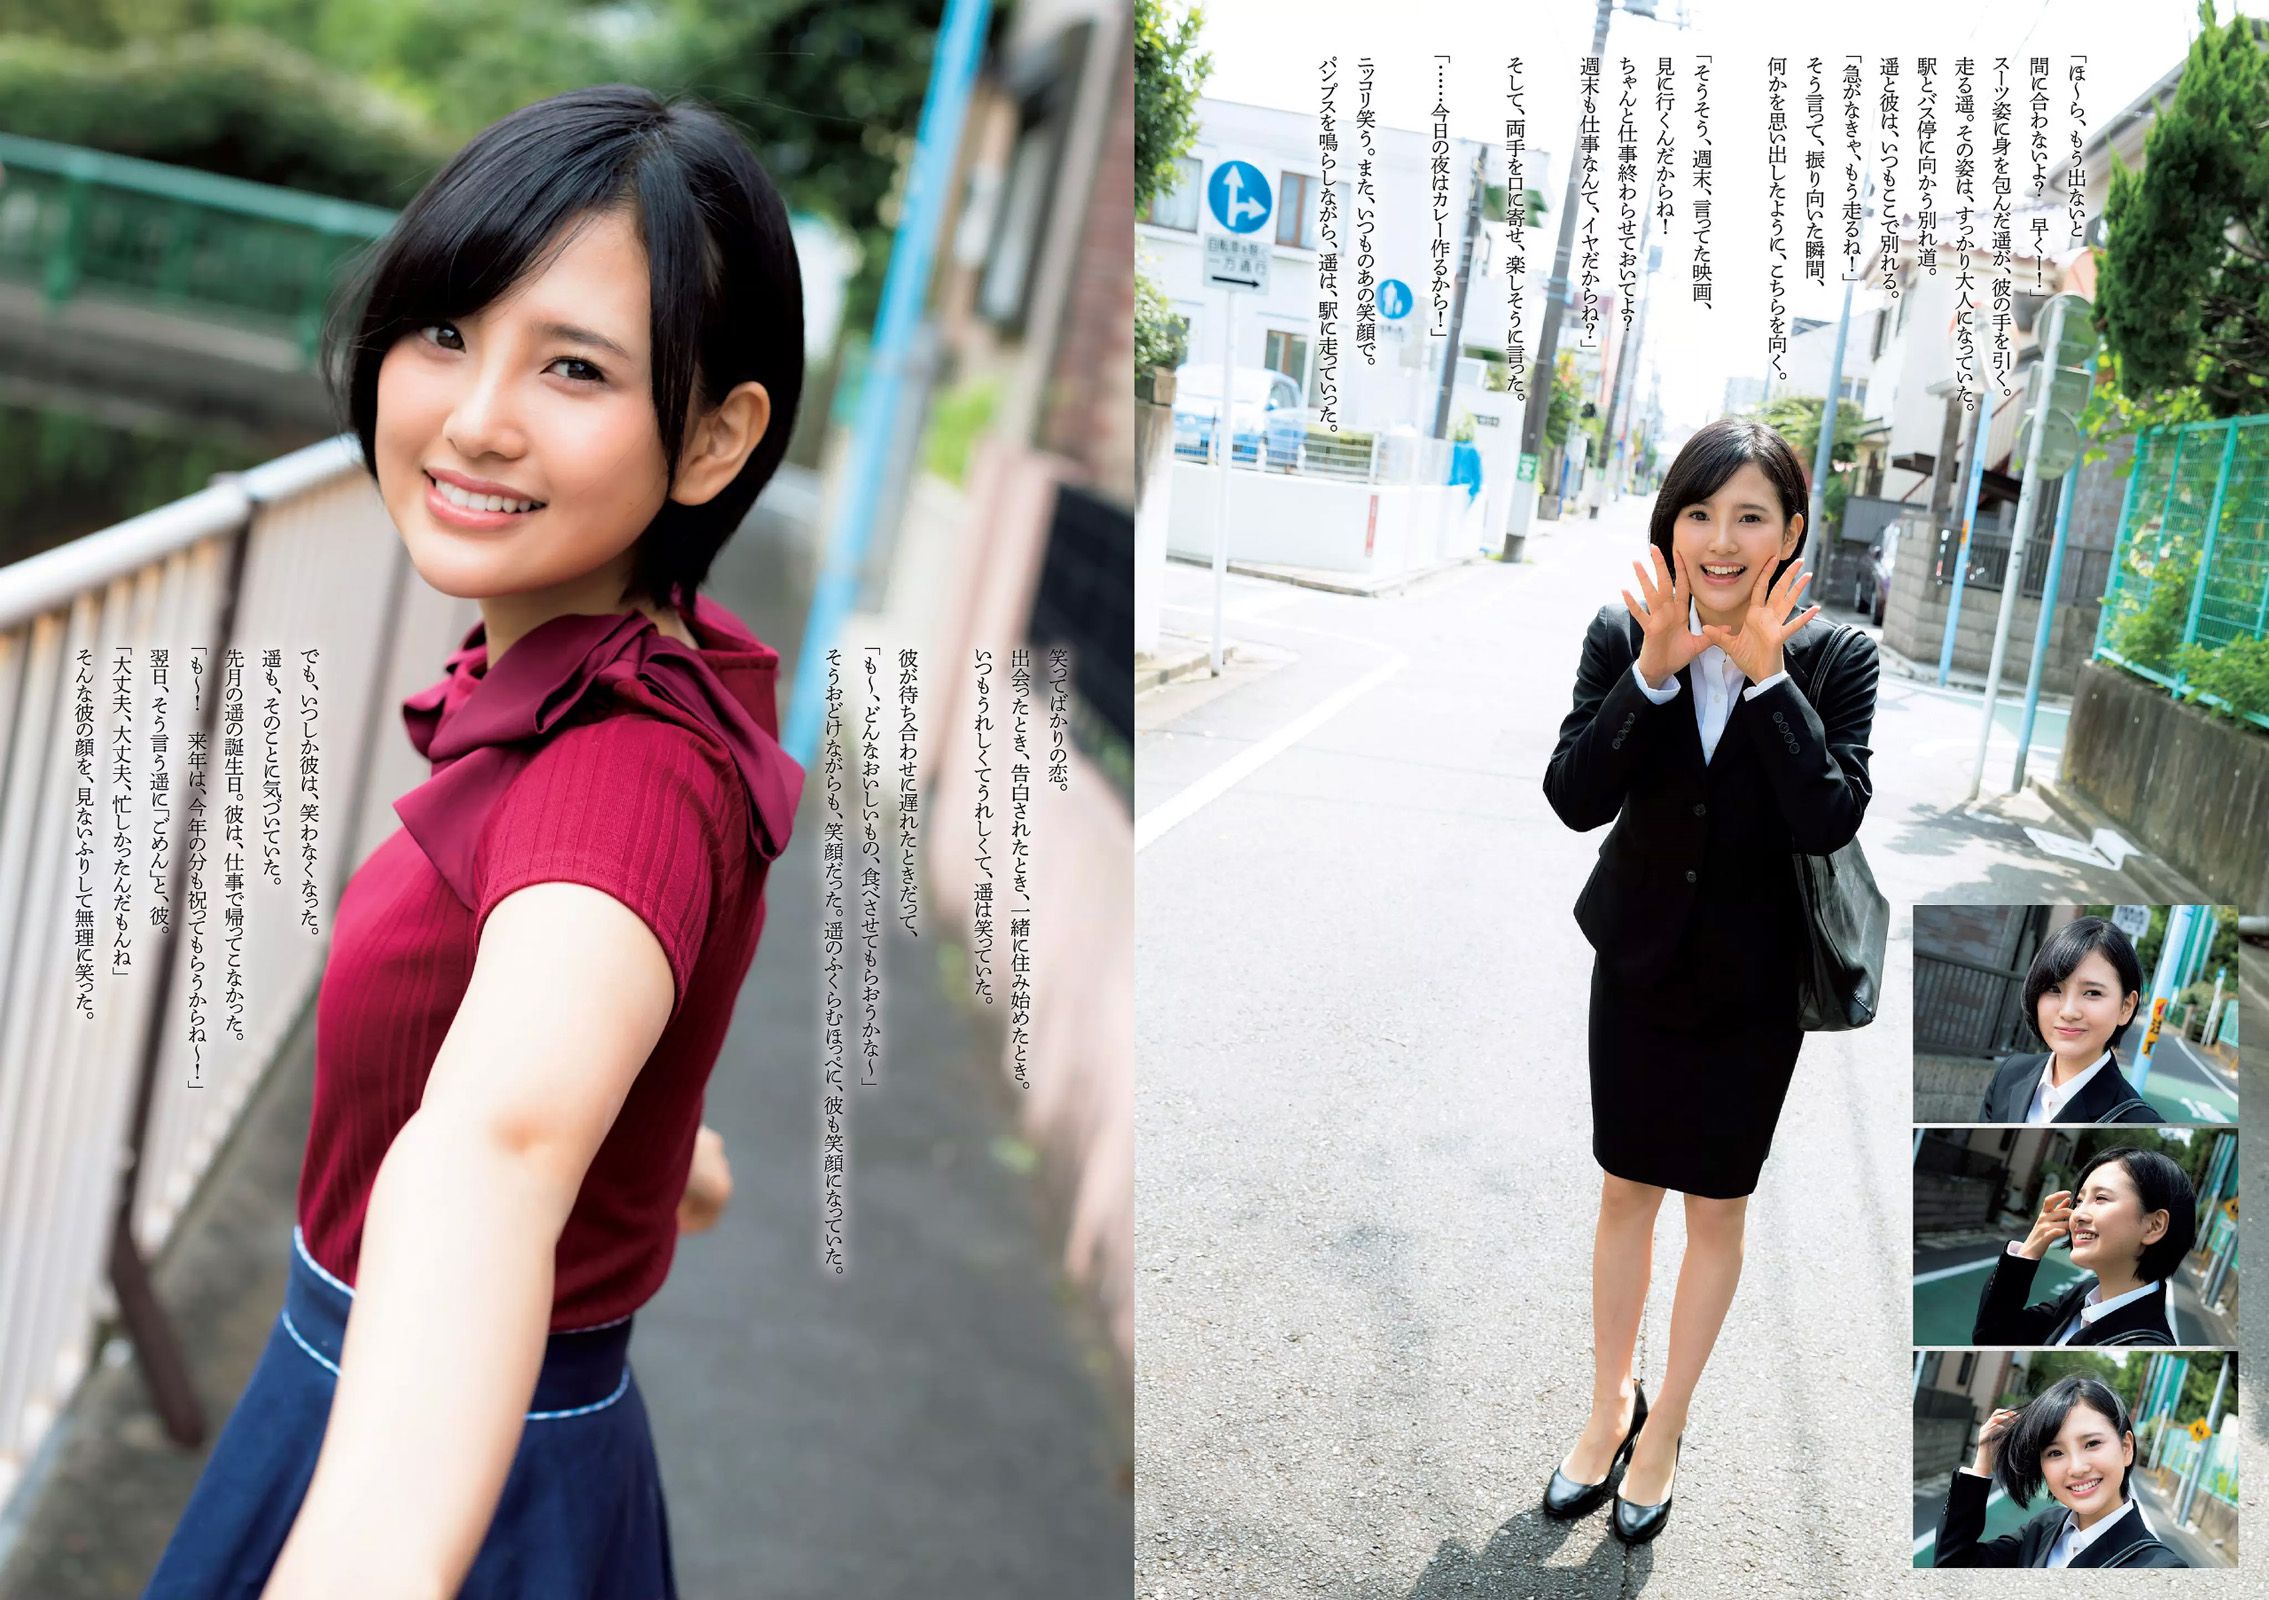 Miwako Kakei Keyakizaka46 Rina Asakawa Reiko Fujiwara Haruka Kodama Kaho Sakaguchi Misa Hayashi Miku Abeno [Weekly Playboy] 2015 No.46 Fotografia Pagina 30 No.828521